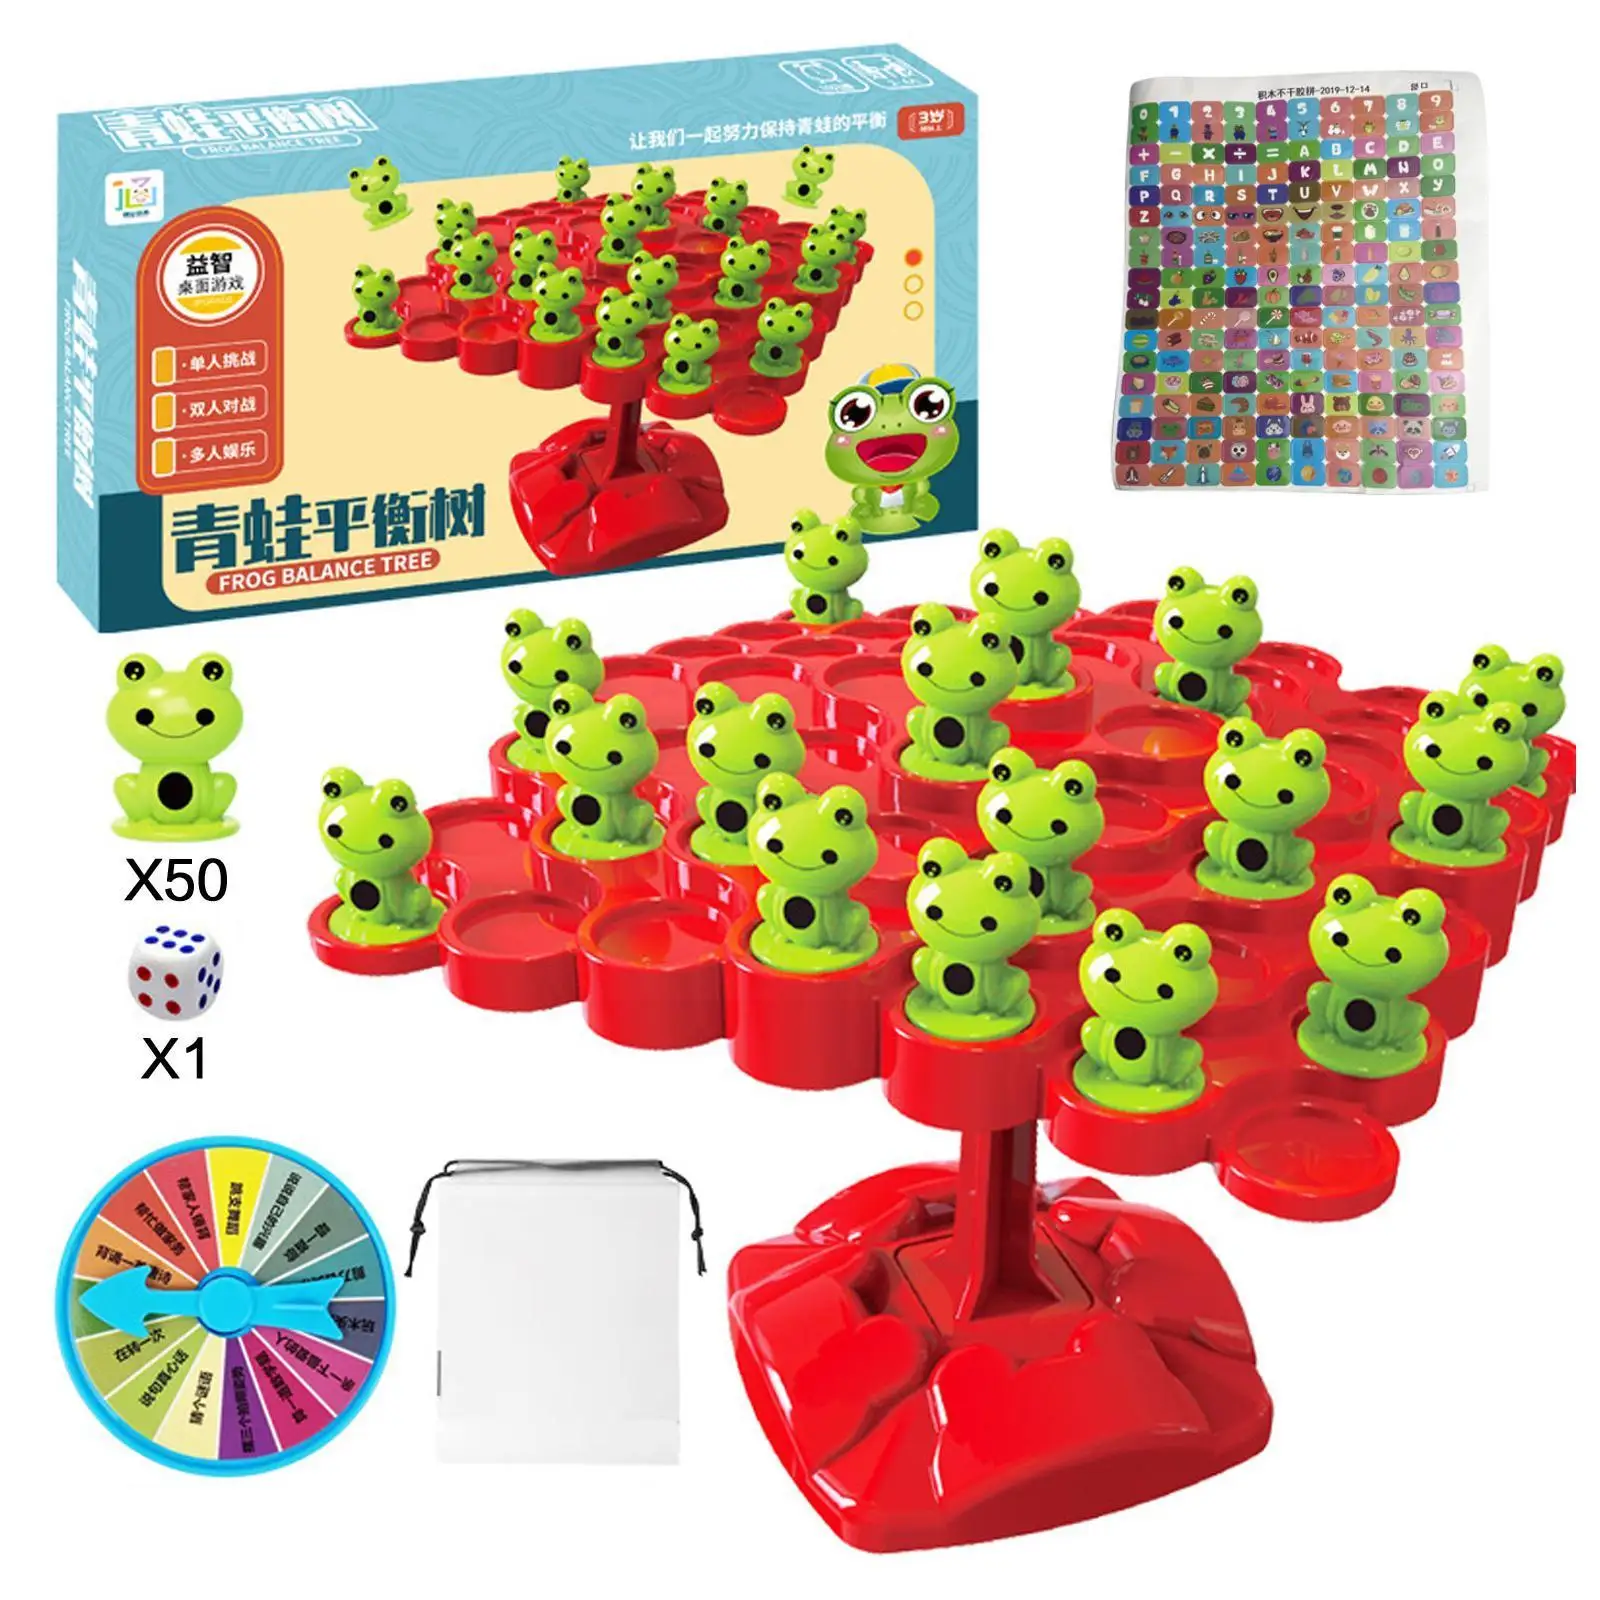 

Математическая игрушка Монтессори, балансировочная лягушка, развивающие игрушки, интерактивные игрушки для родителей и детей, настольная обучающая игра, для отдыха, для детей R6D2